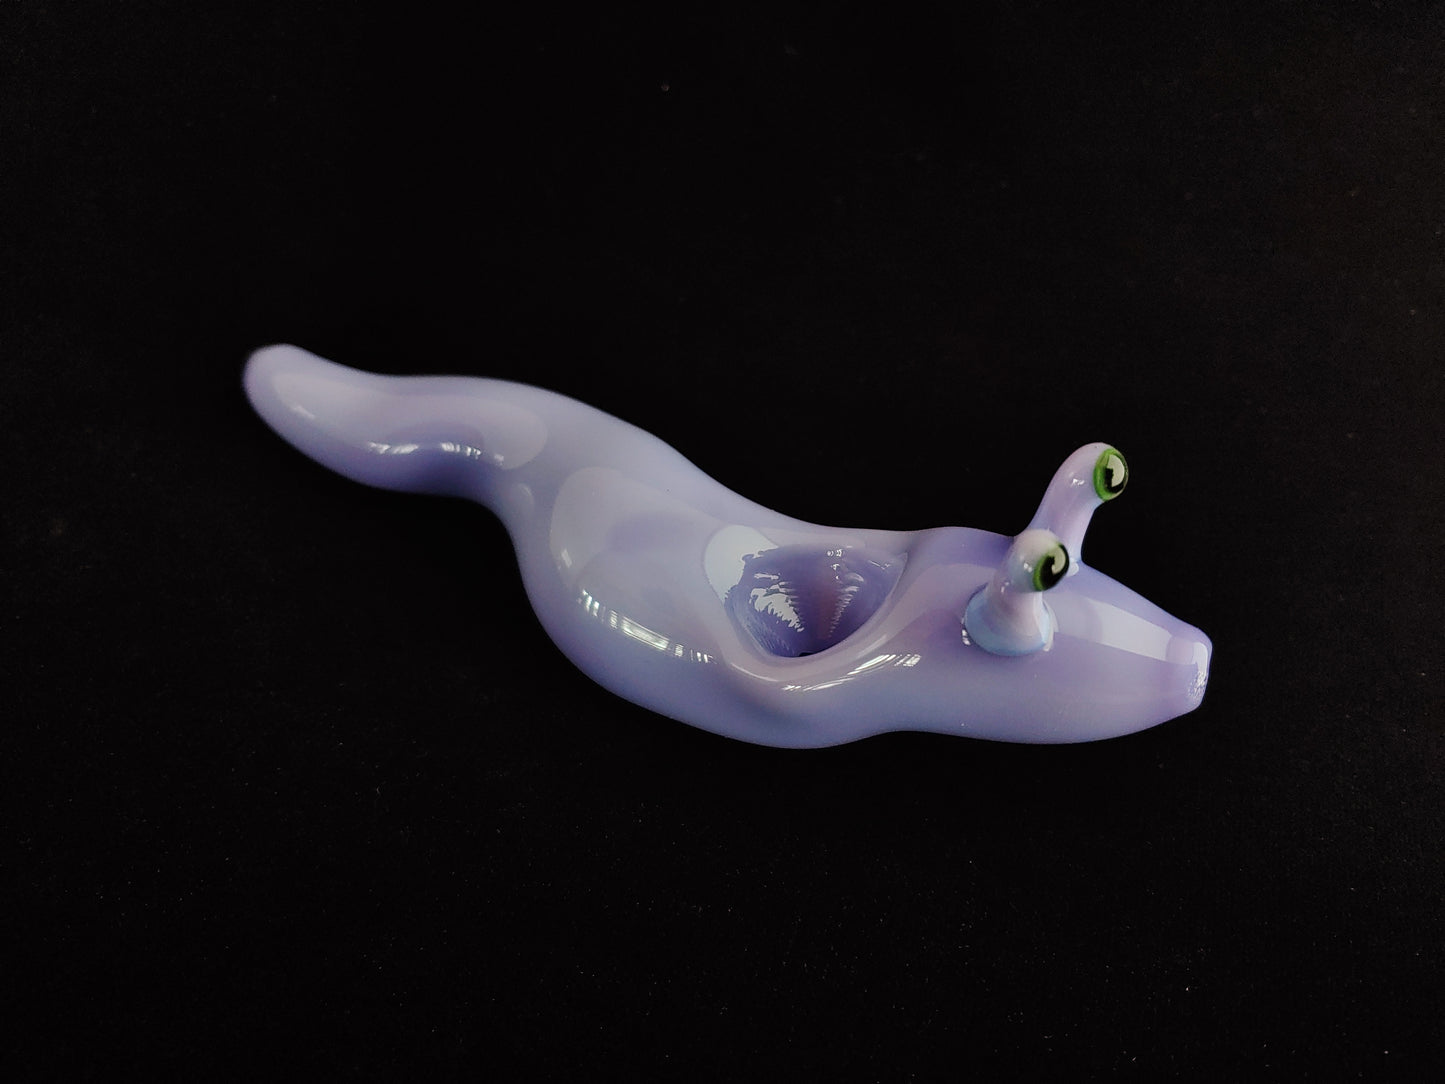 Blown glass slug pipe. Color changing. Unique gift idea.